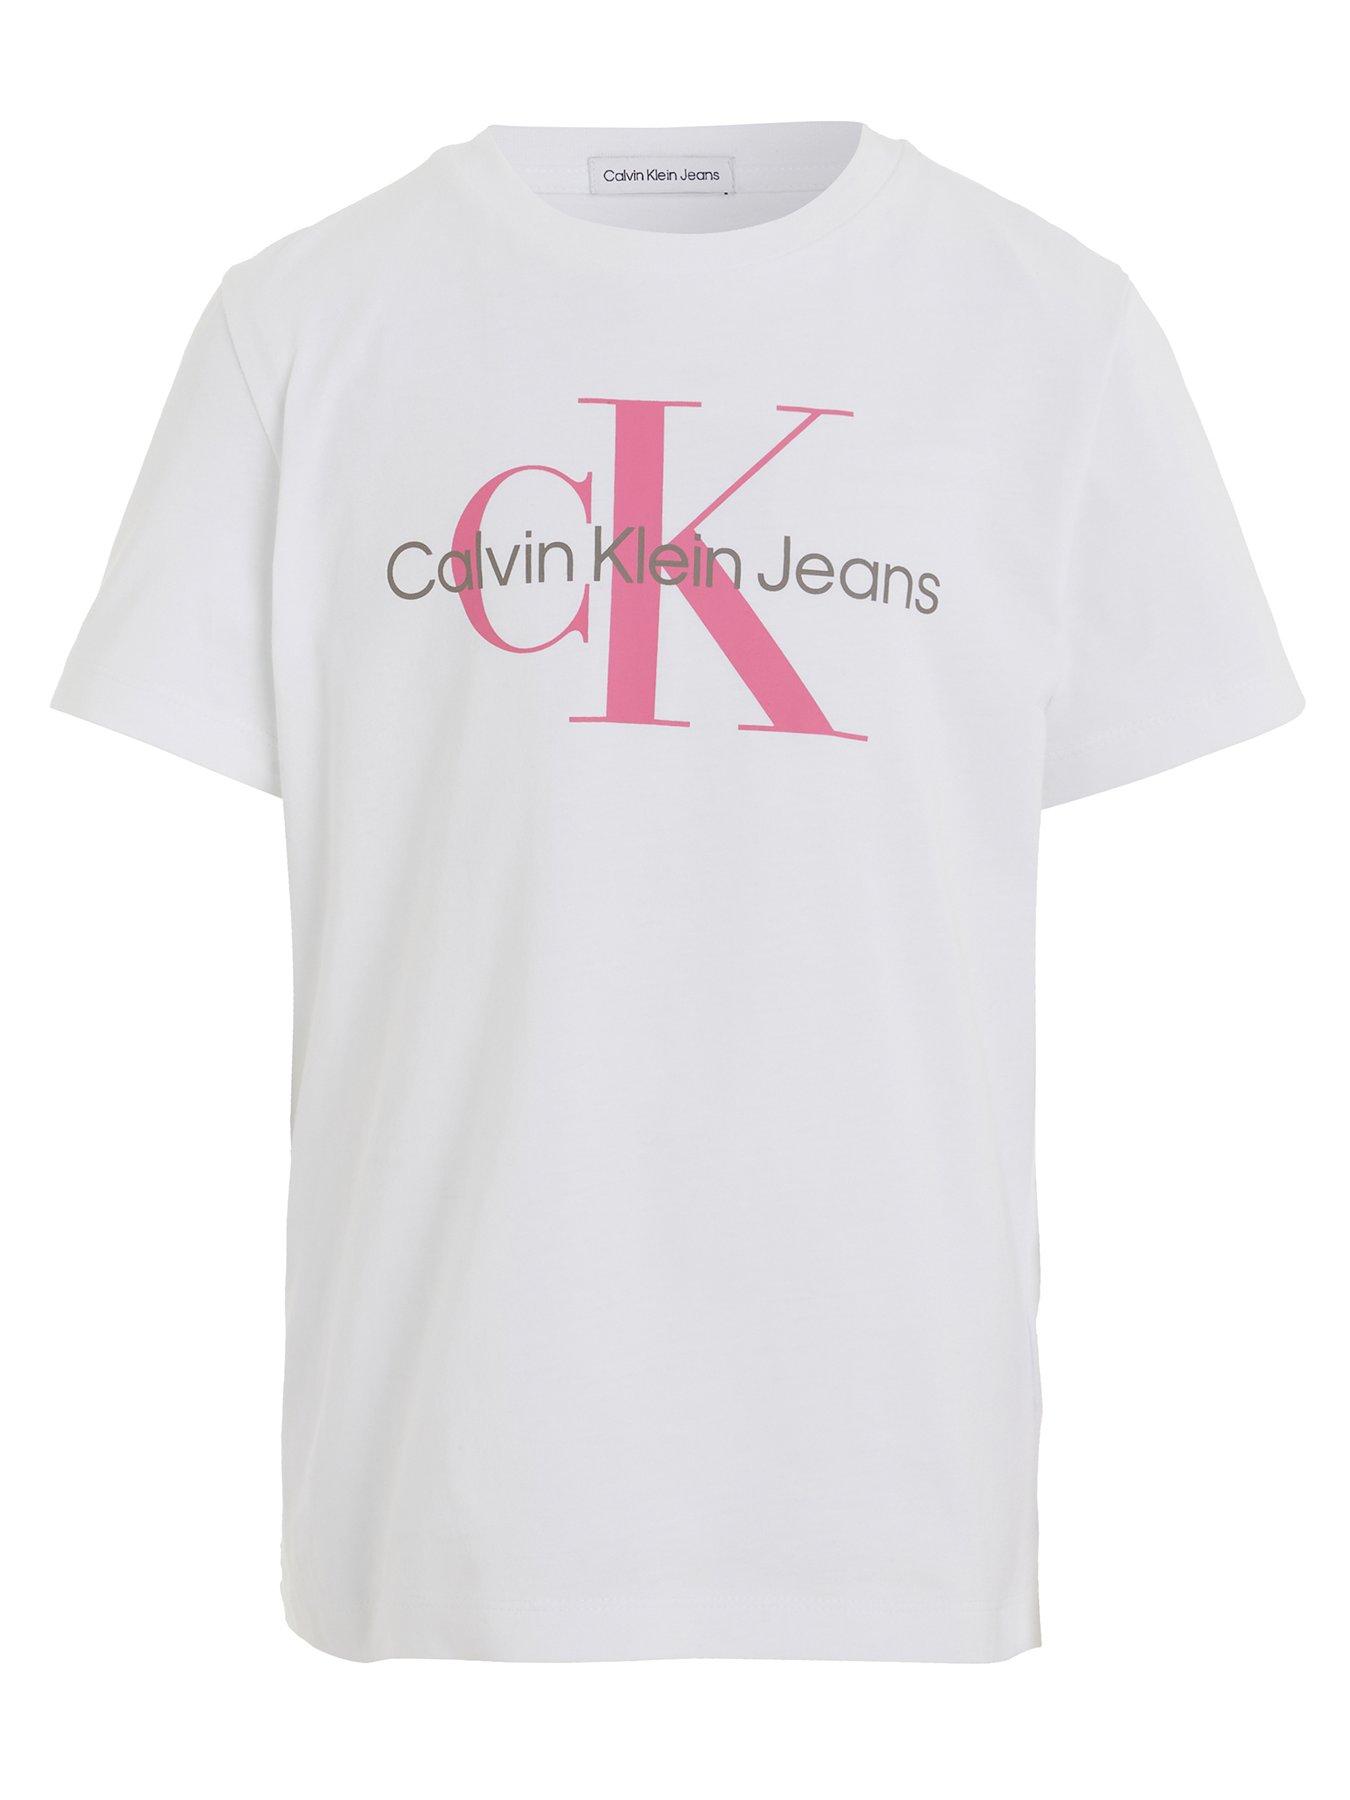 Calvin Klein Tee Shirt  Girls tee shirts, Calvin klein outfits